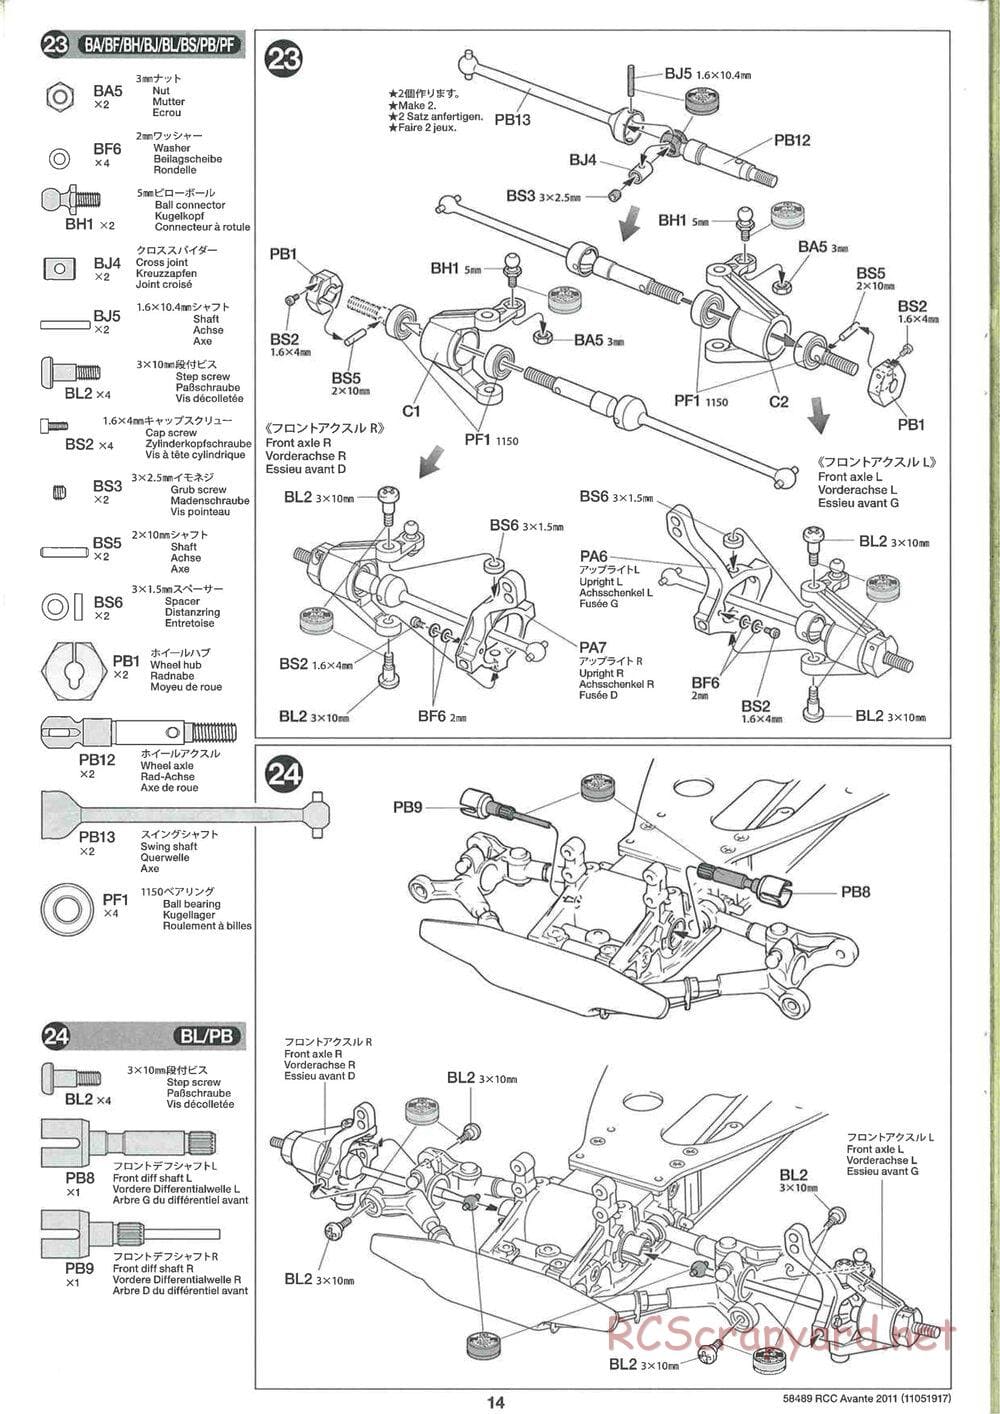 Tamiya - Avante 2011 - AV Chassis - Manual - Page 14